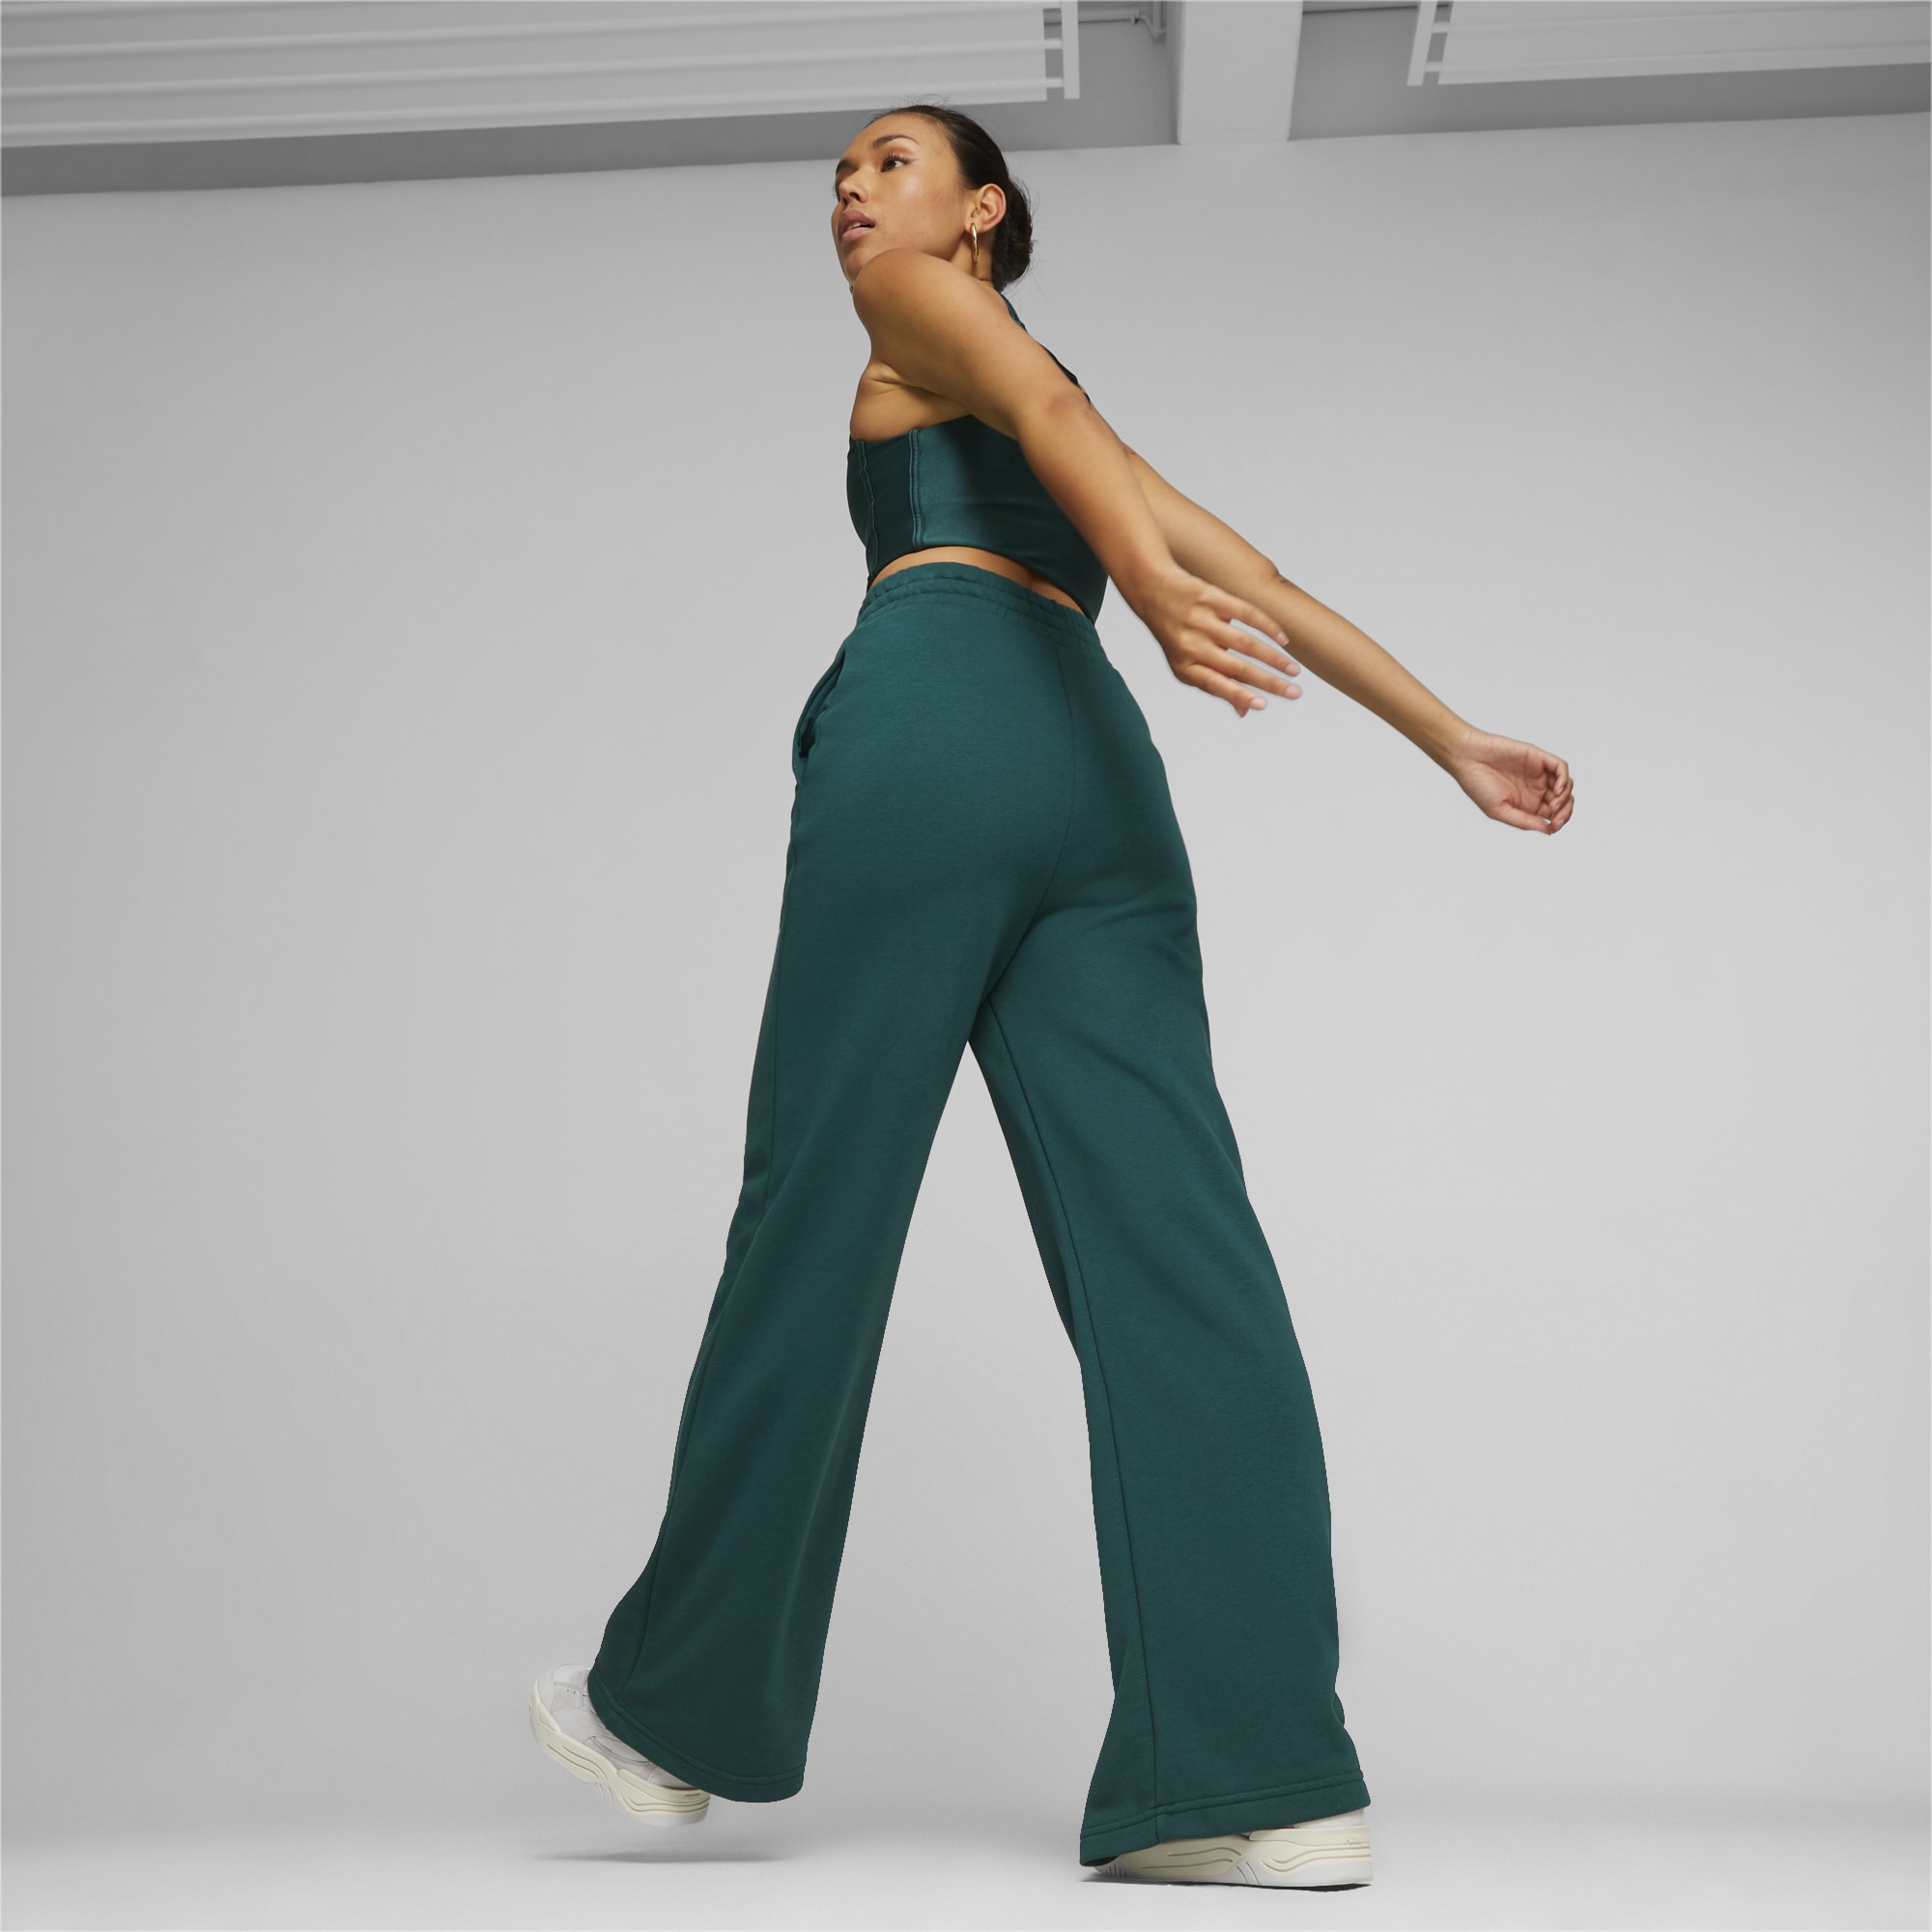 PUMA Classics Women's Relaxed Sweatpants, Malachite, Size XXL, Clothing